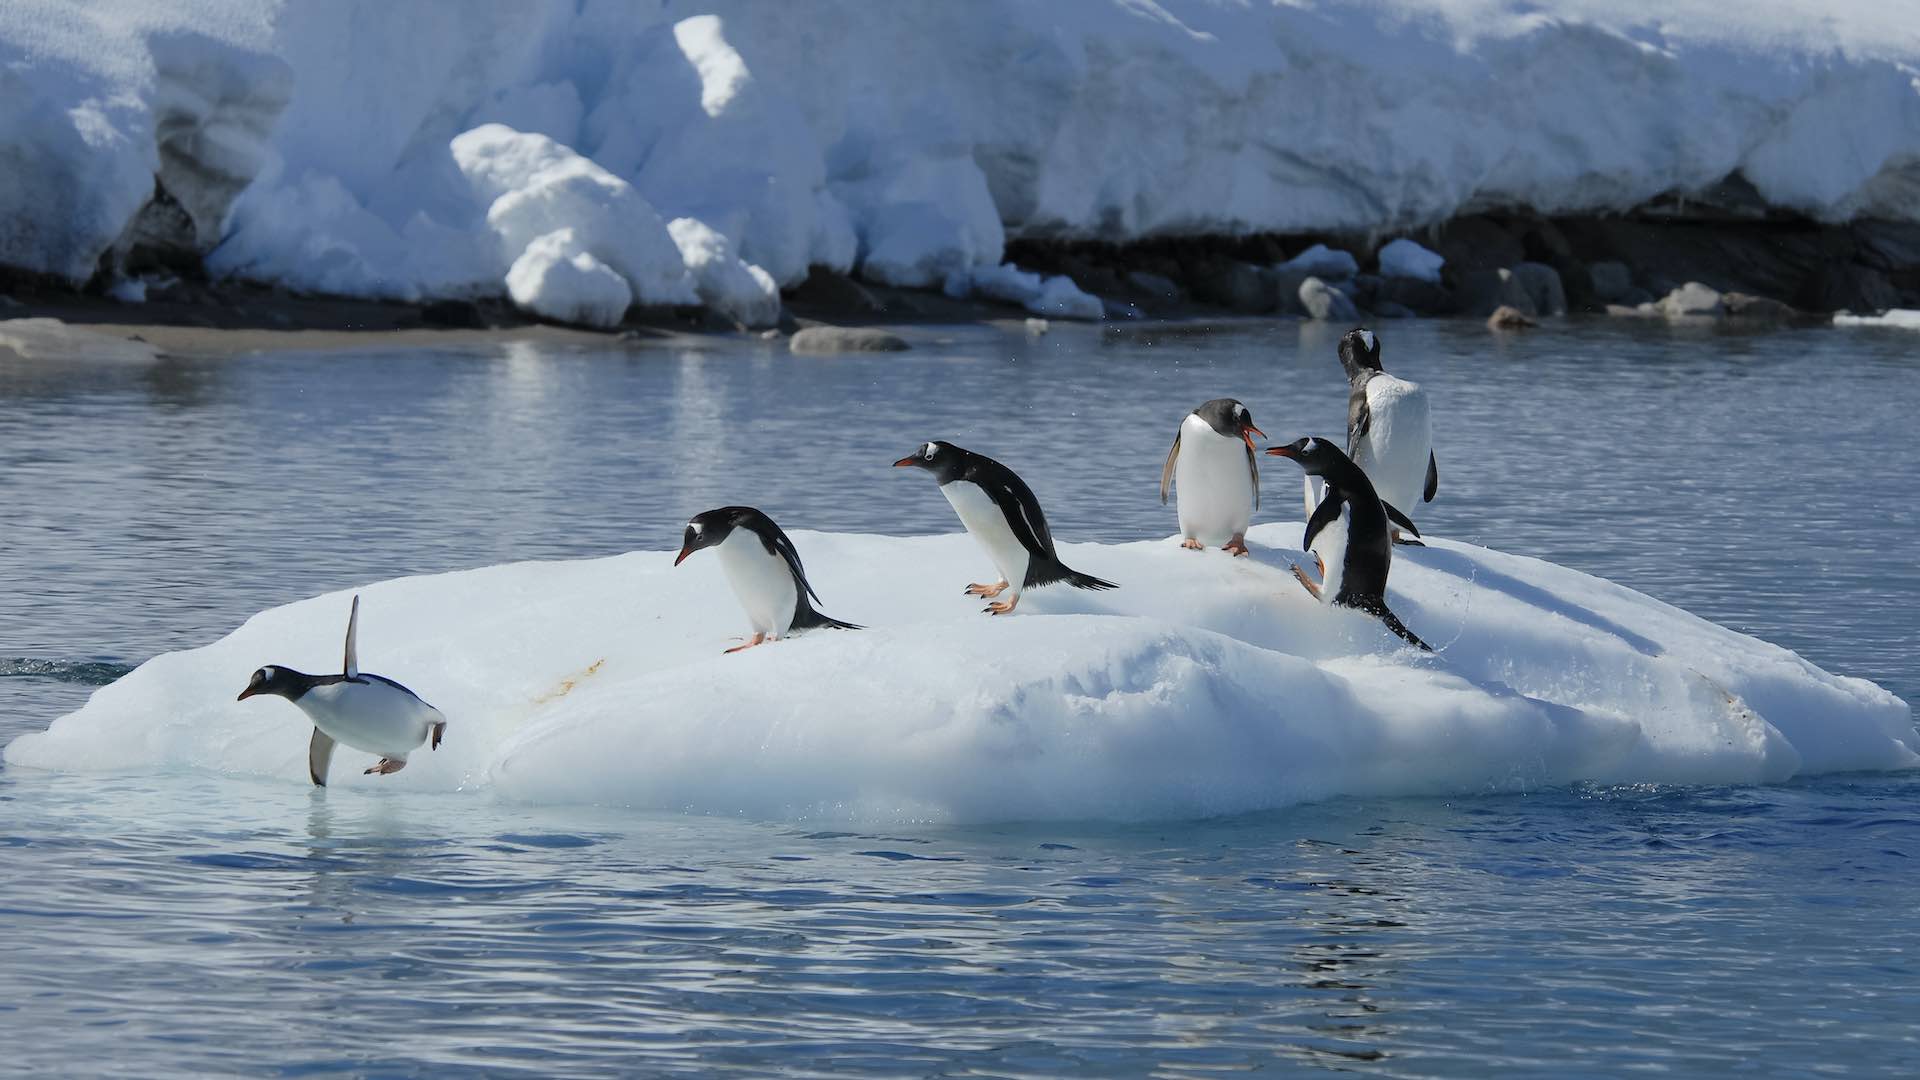 La fonte des glaces de l'Antarctique souligne l'urgence d'une action climatique, déclare le secrétaire général de l'ONU